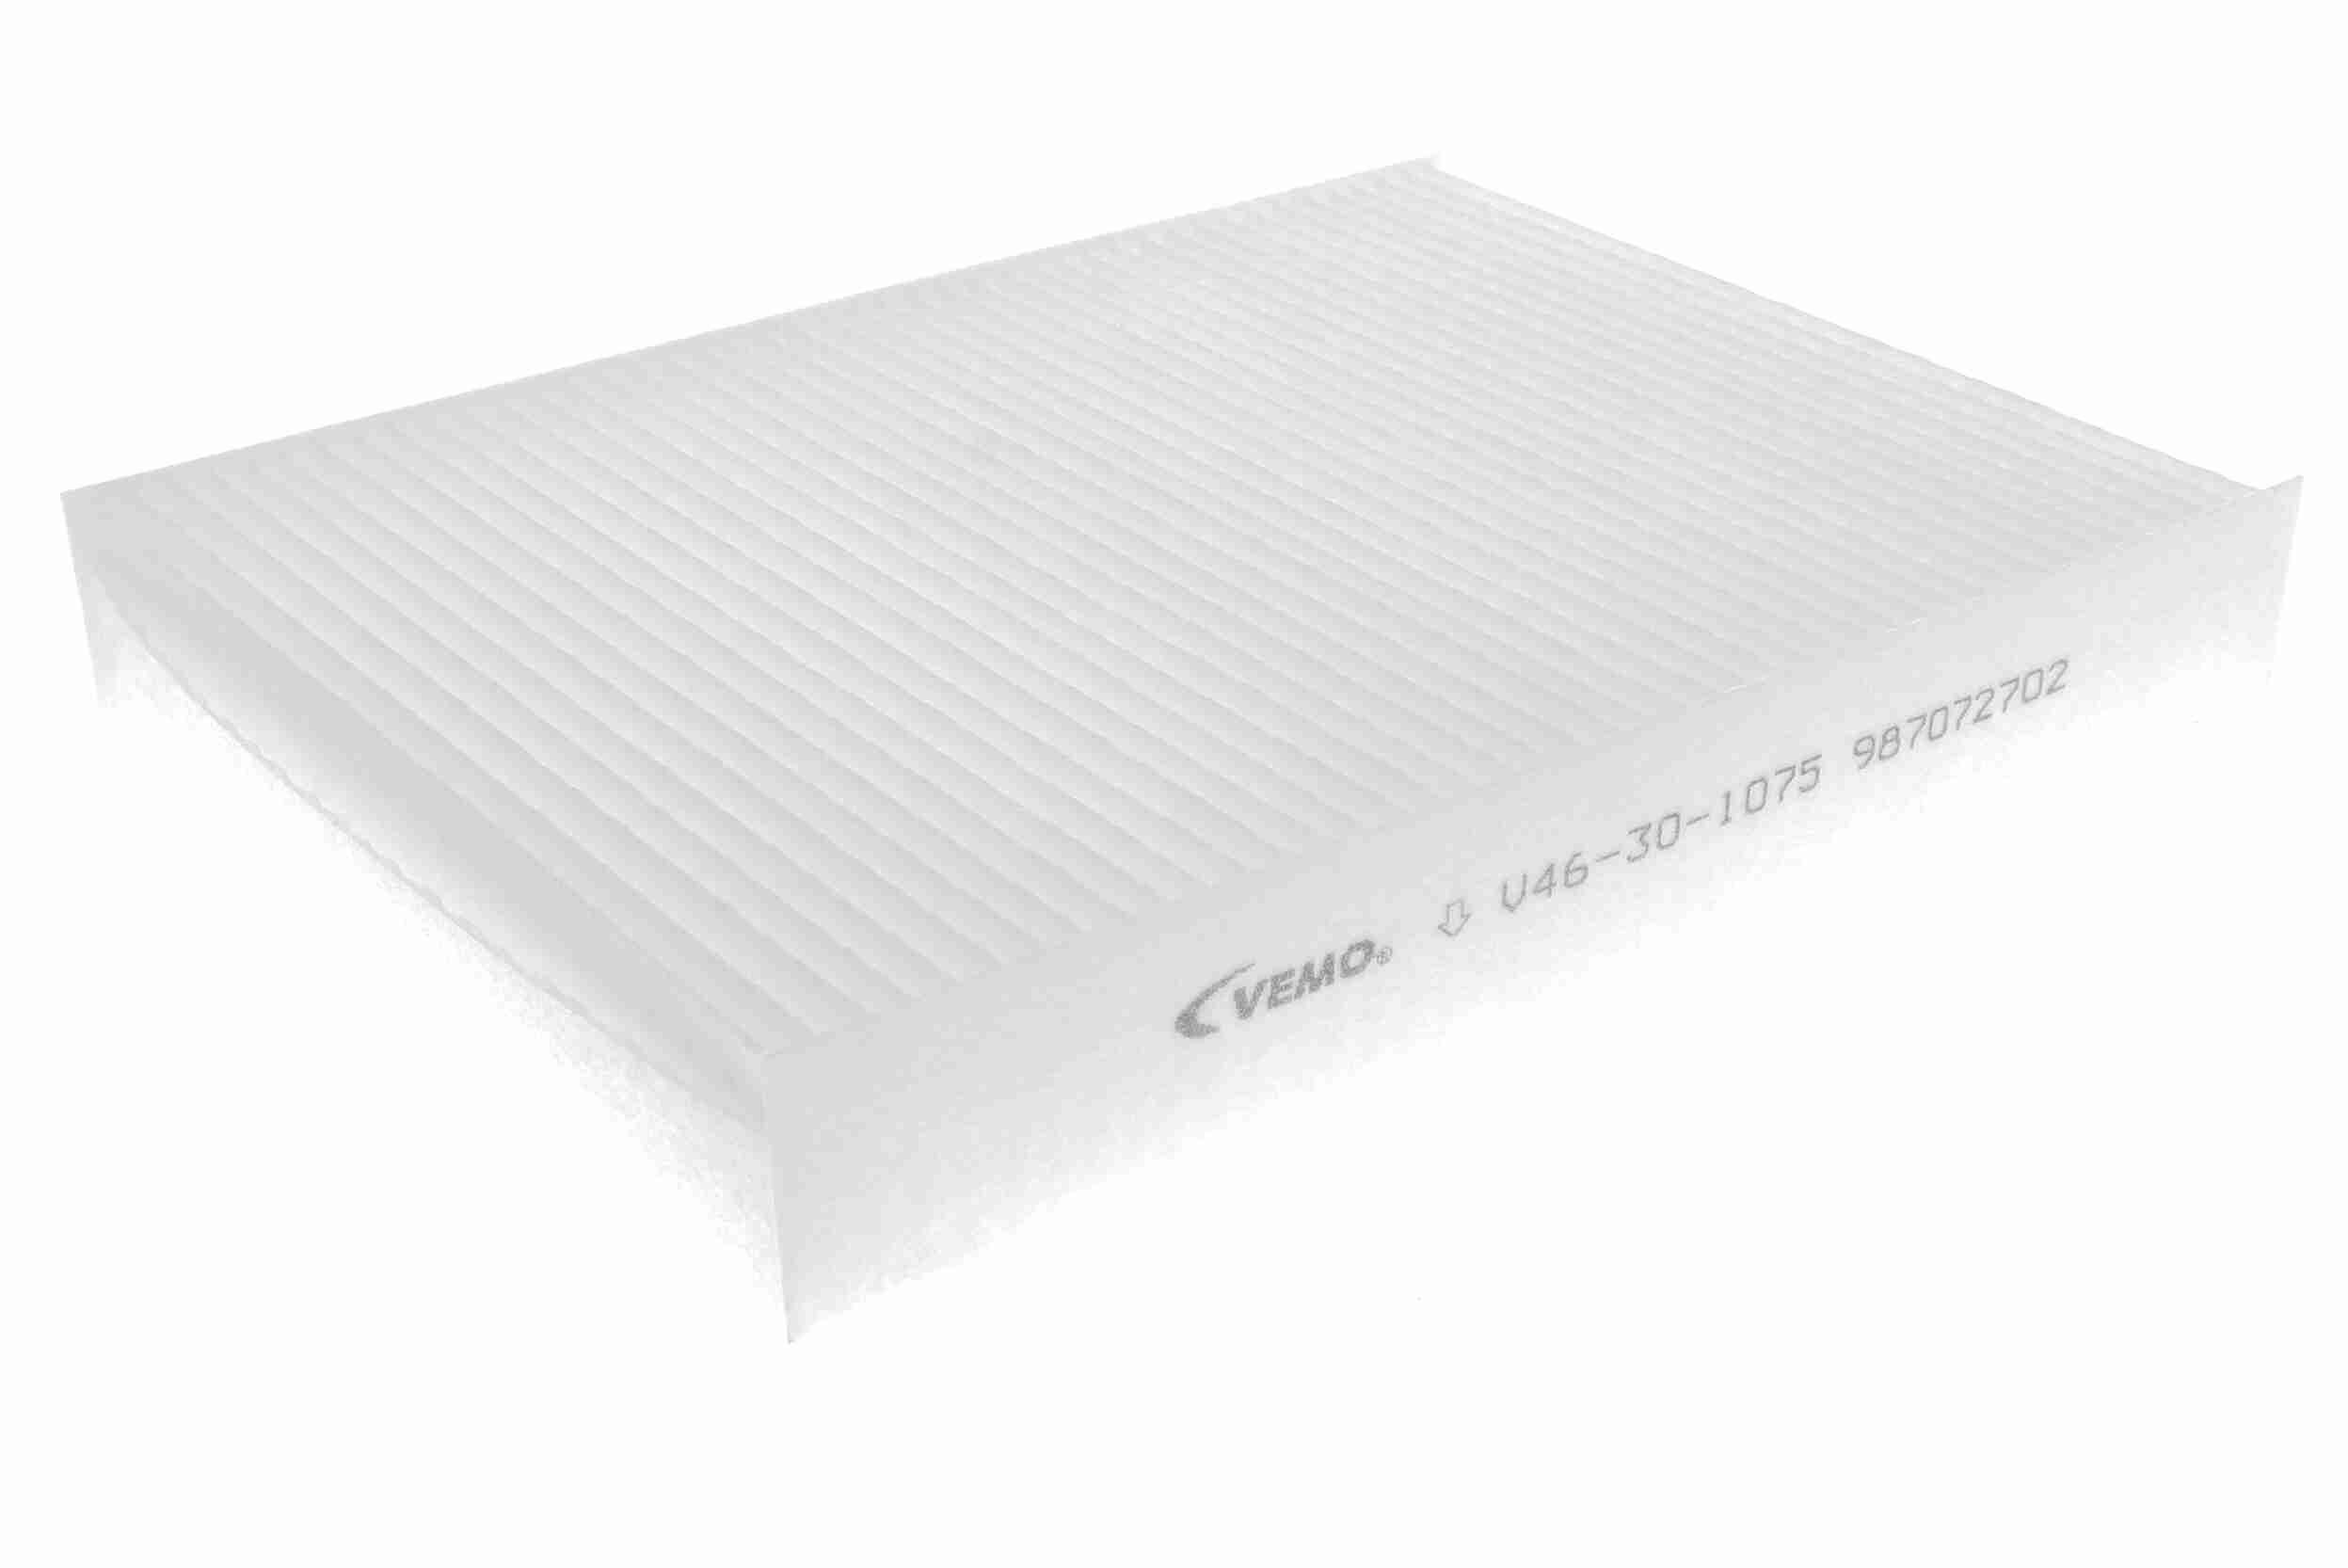 VEMO Air conditioning filter V46-30-1075